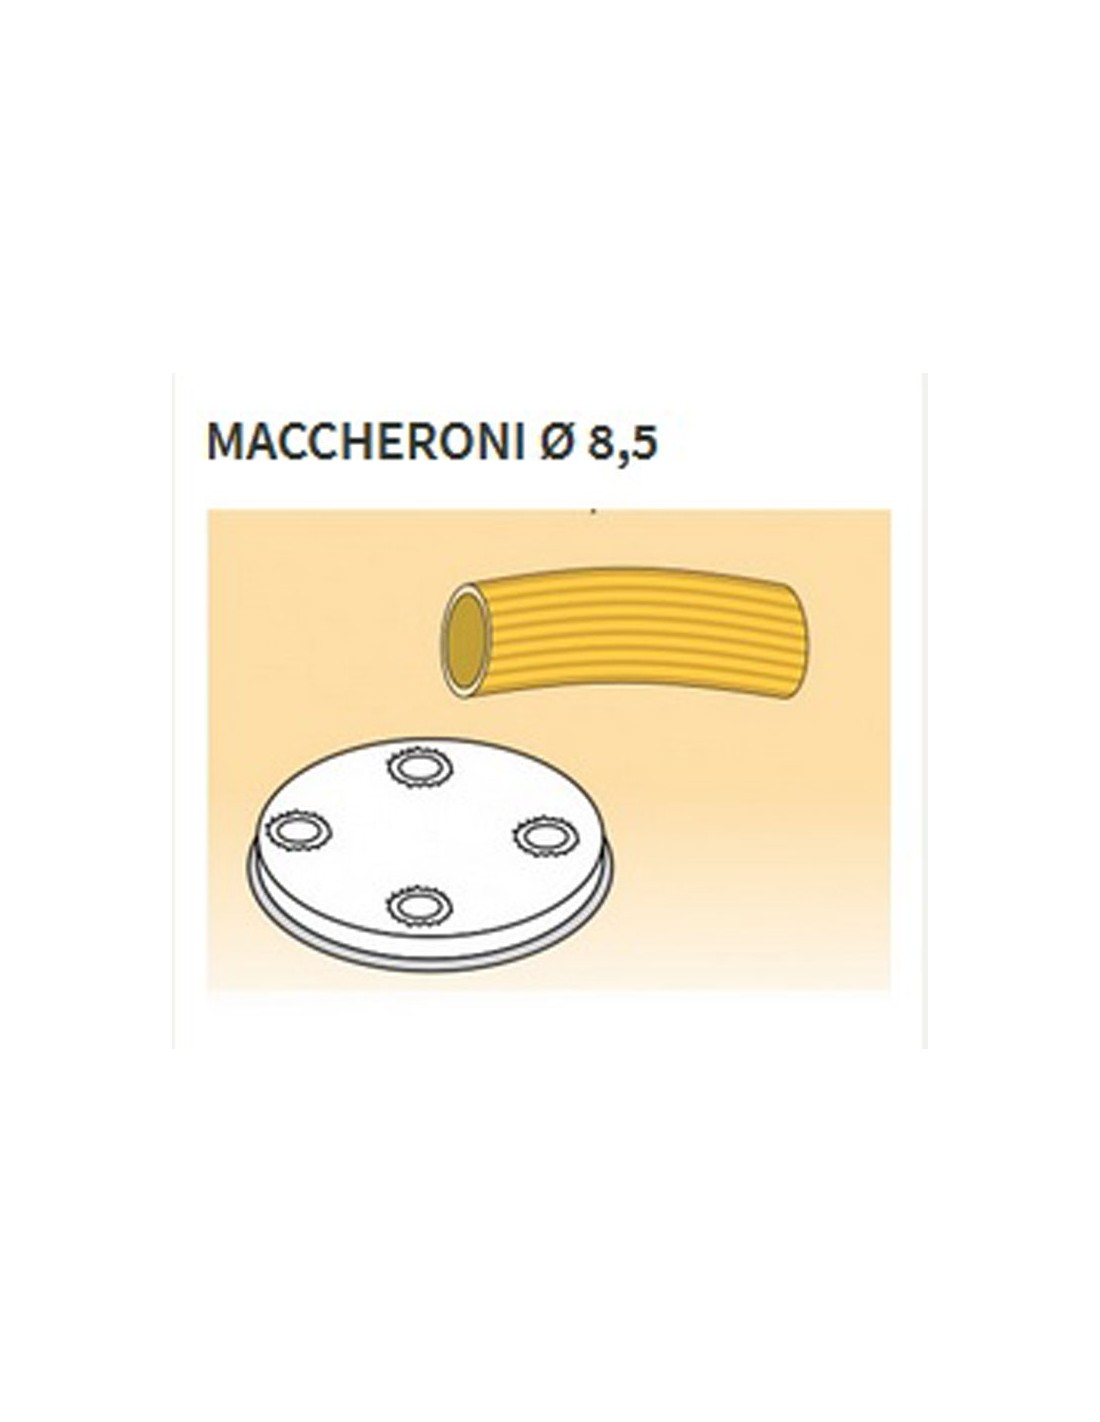 Matrices de aleación de latón de varias formas - Bronce - Para MPF25 - MPF4N - Maccheroni Ø mm 8.5